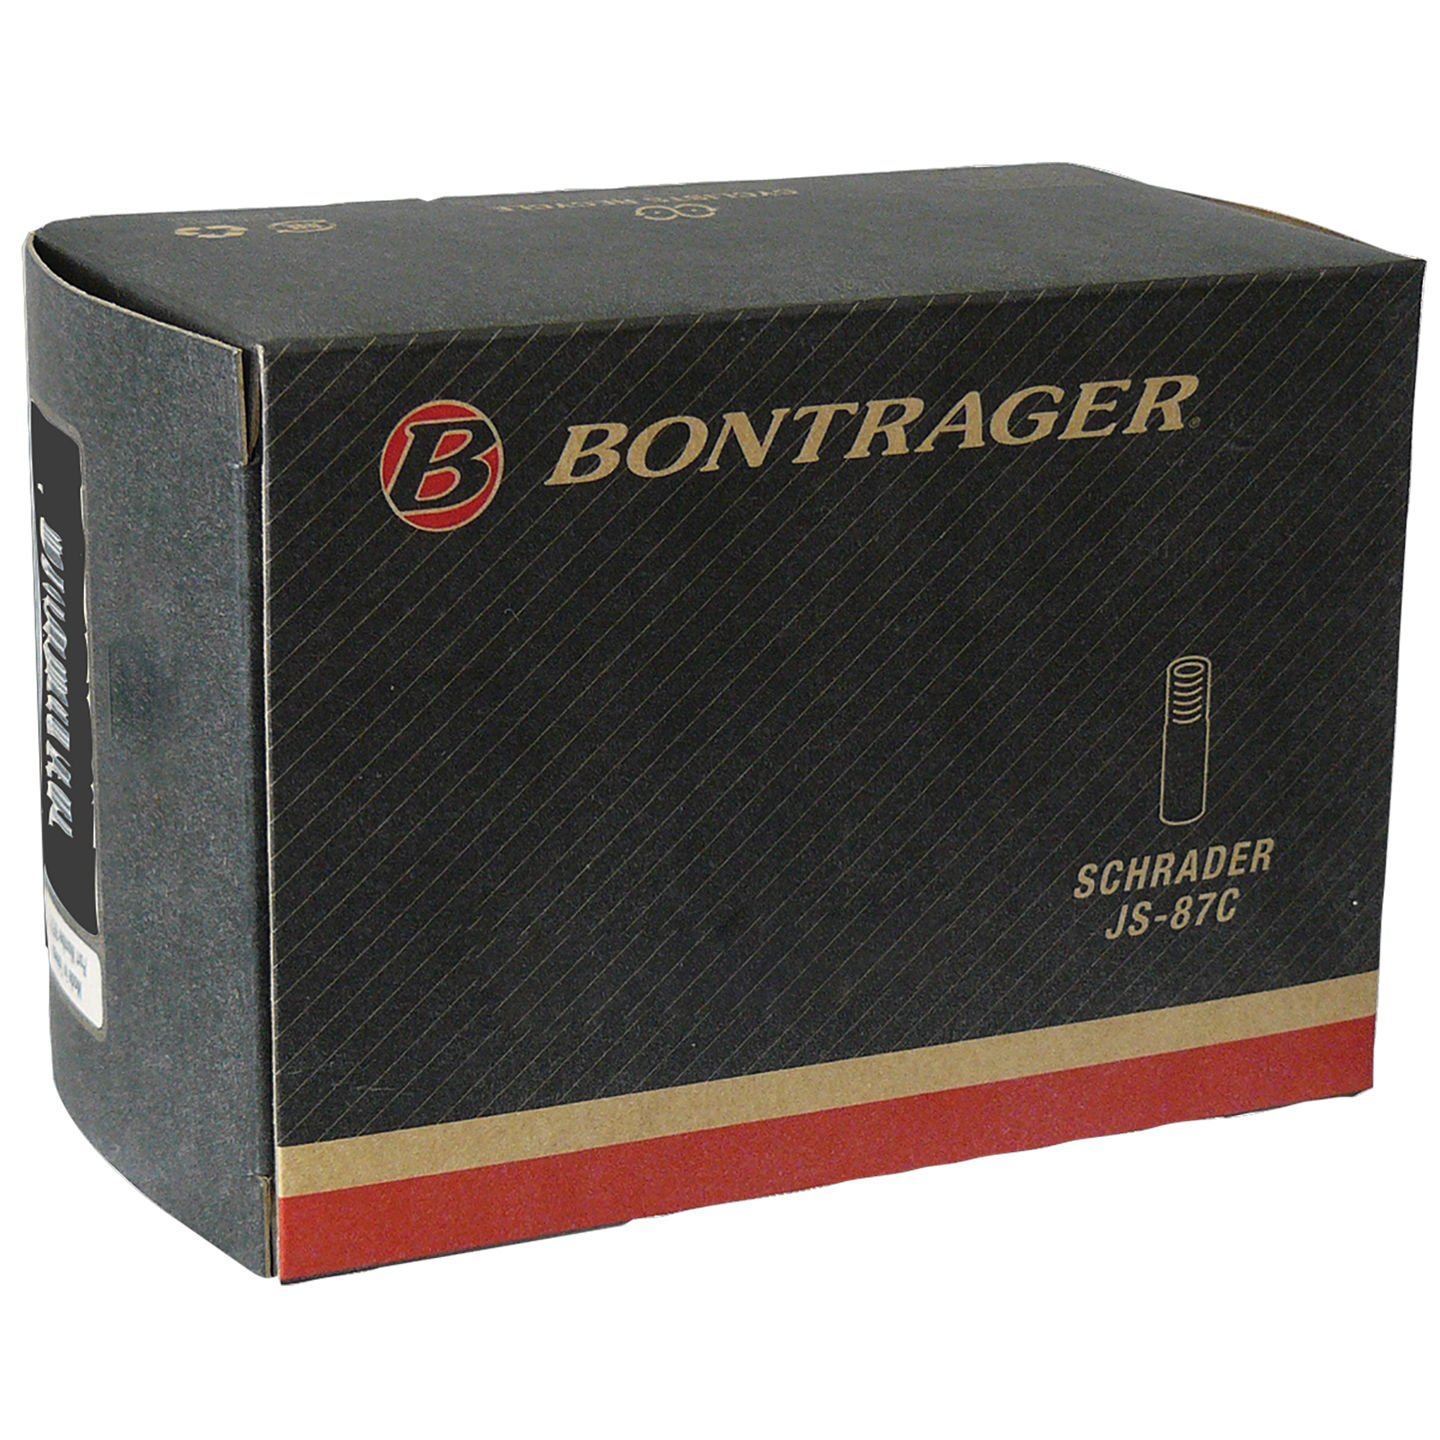 Камера велосипедная Bontrager Standard, 26x1.25-1.75, Presta 36mm, TCG-88449 камера велосипедная bontrager standard 12 1 2x2 1 4 sv tcg 66943